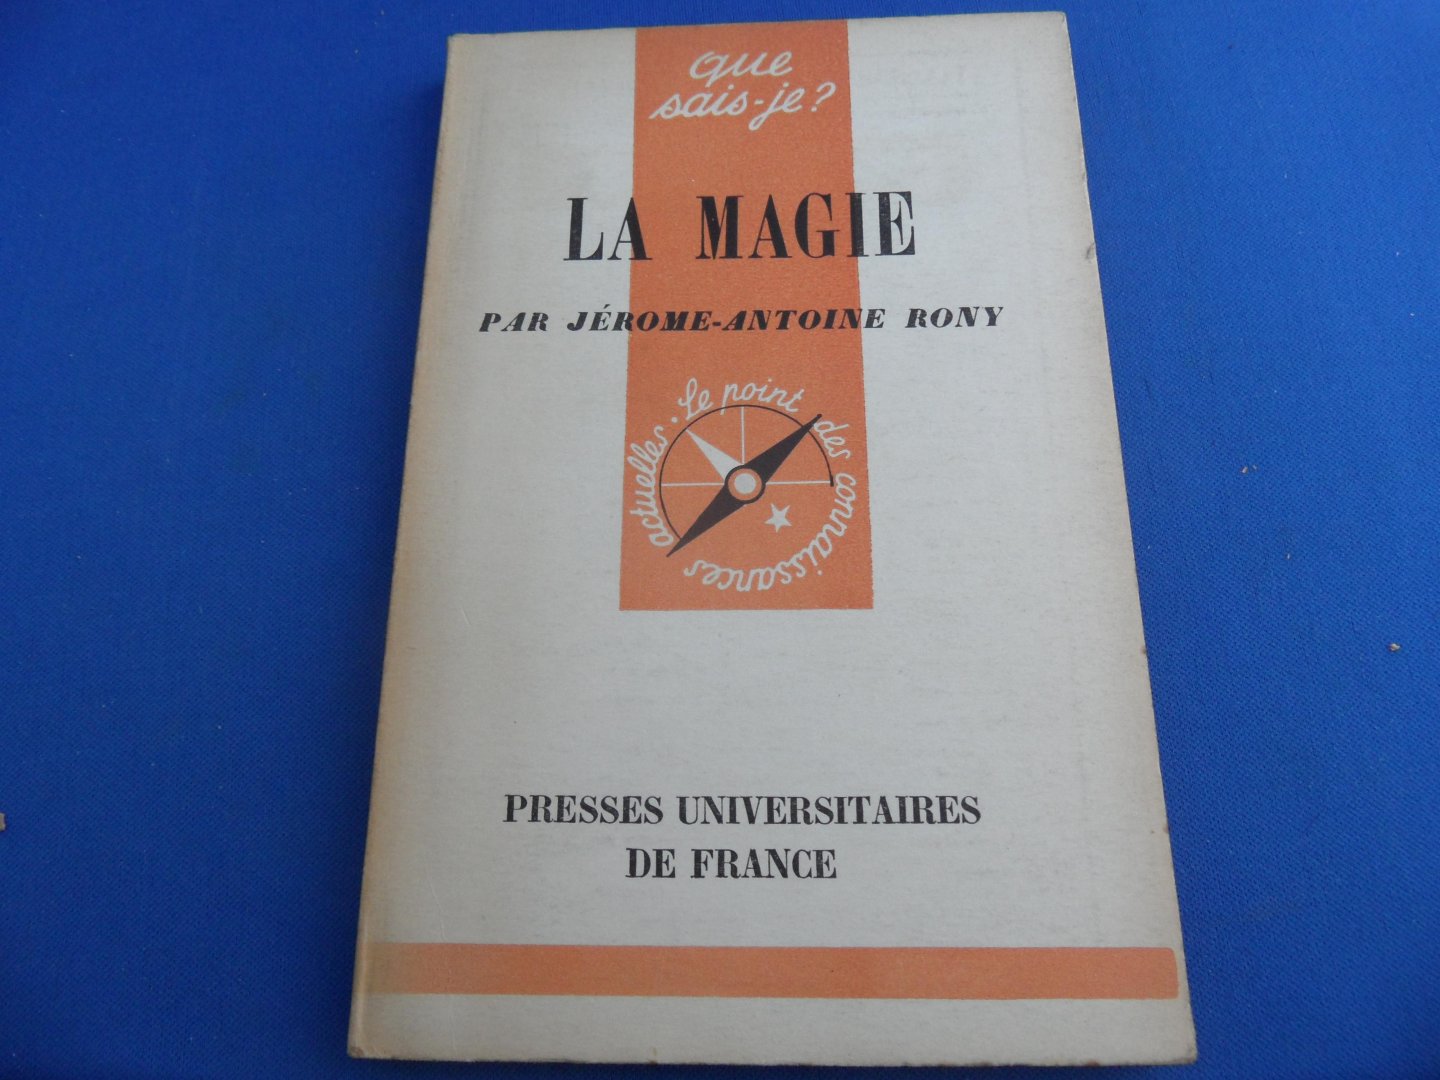 Rony, Jérome-Antoine - La magie